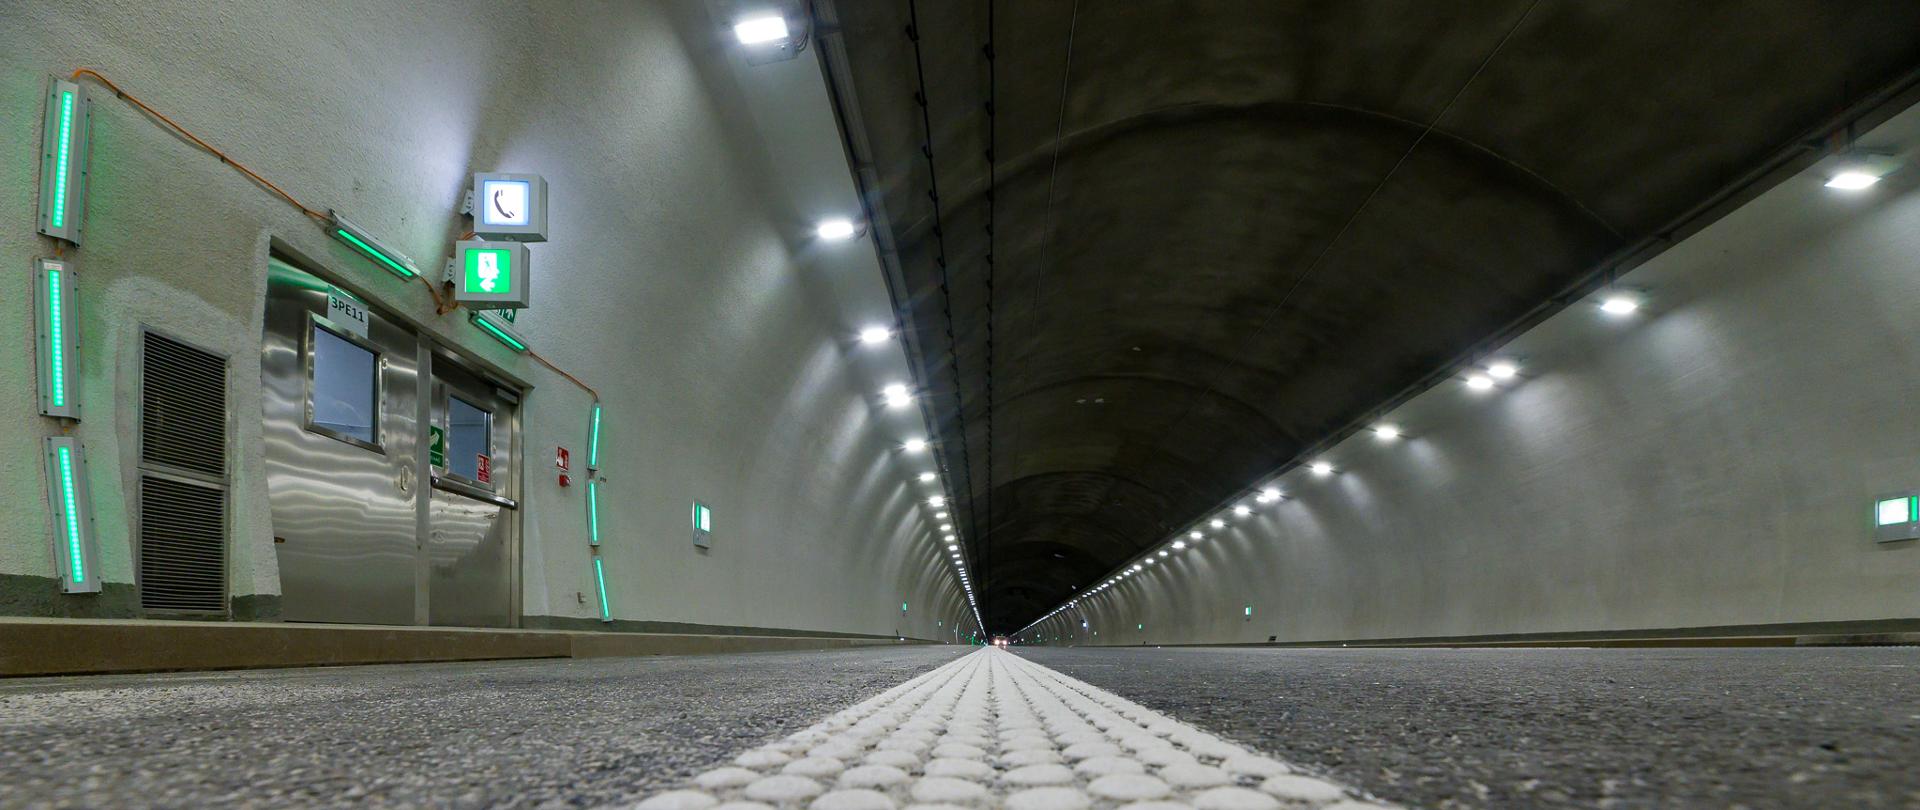 Tunel pod górą Luboń Mały w ciągu S7 Lubień - Rabka-Zdrój